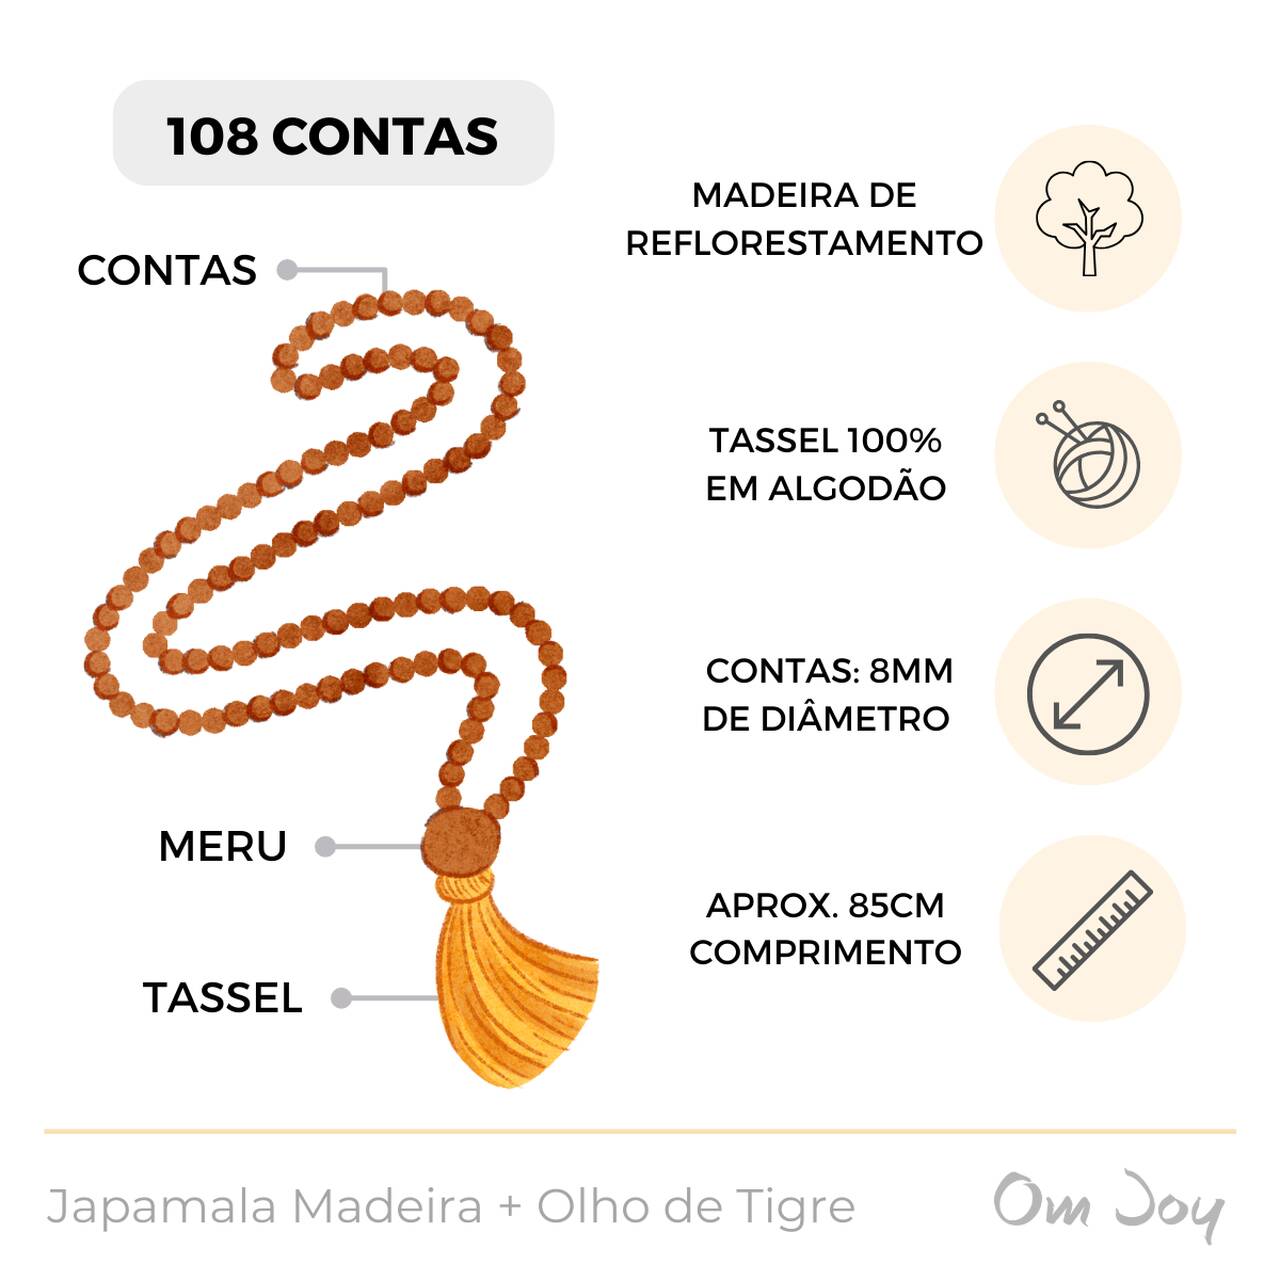 Japamala Madeira Essencial - Cristal Olho de Tigre 108 Contas - Om Joy